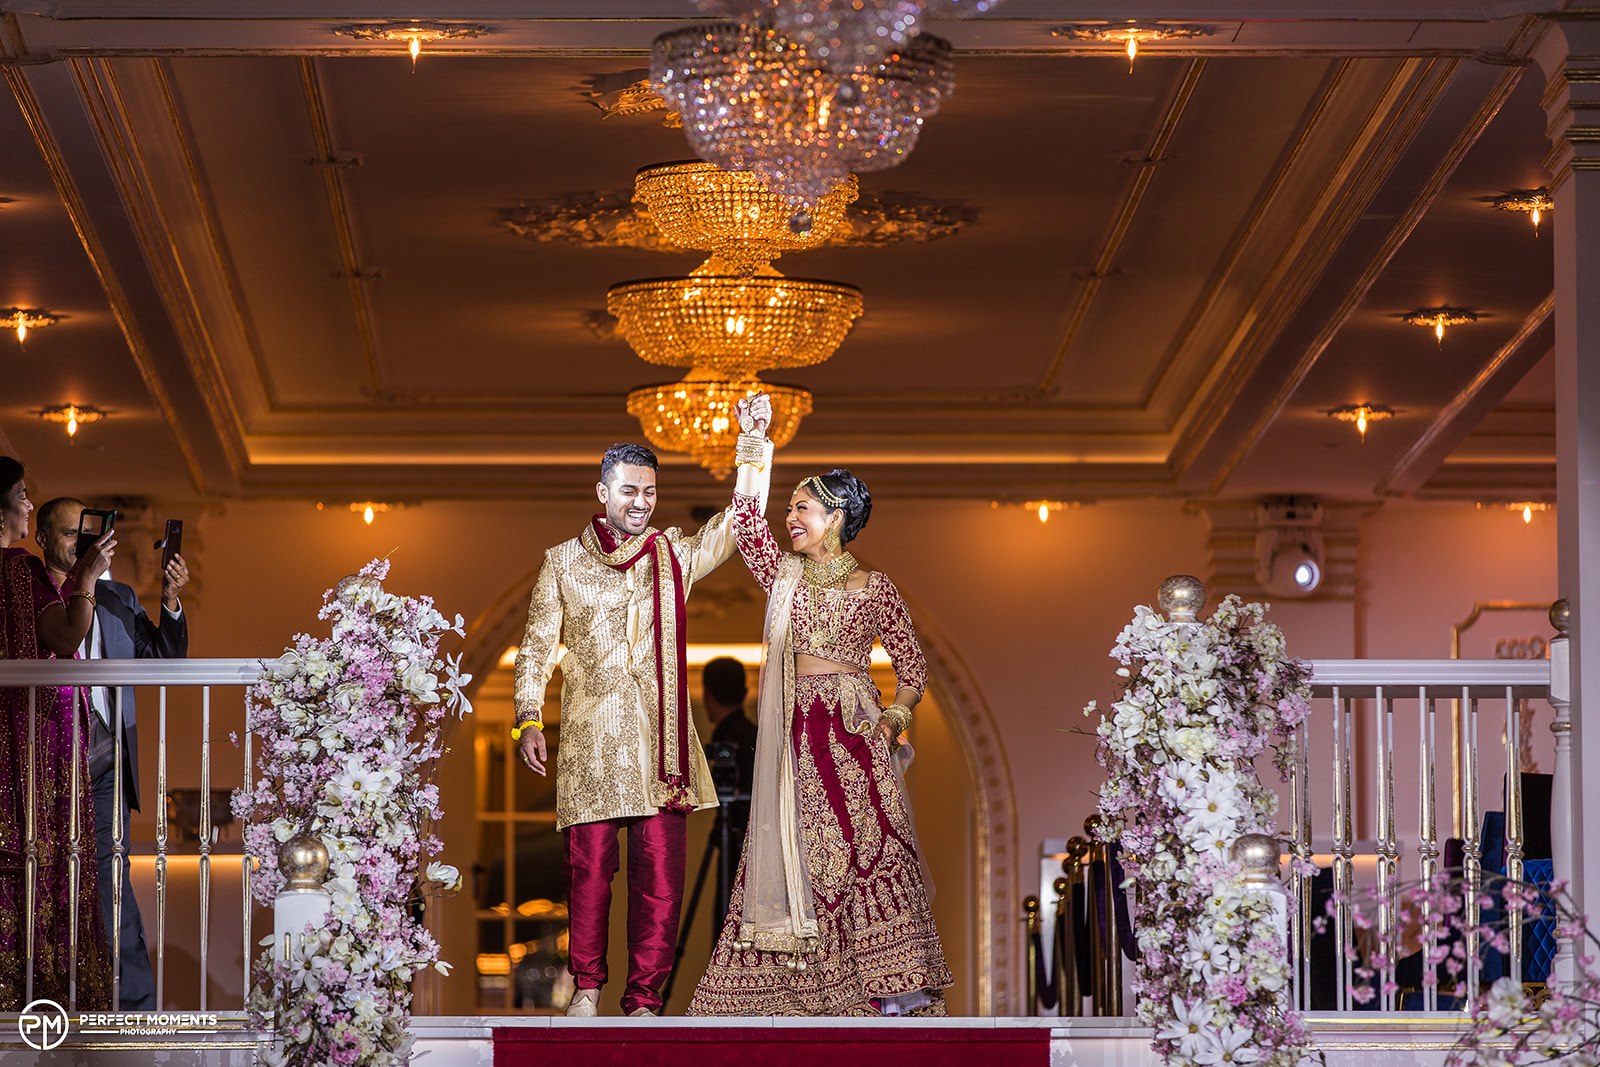 Hindoestaanse bruiloft in het Paleis in Schiedam